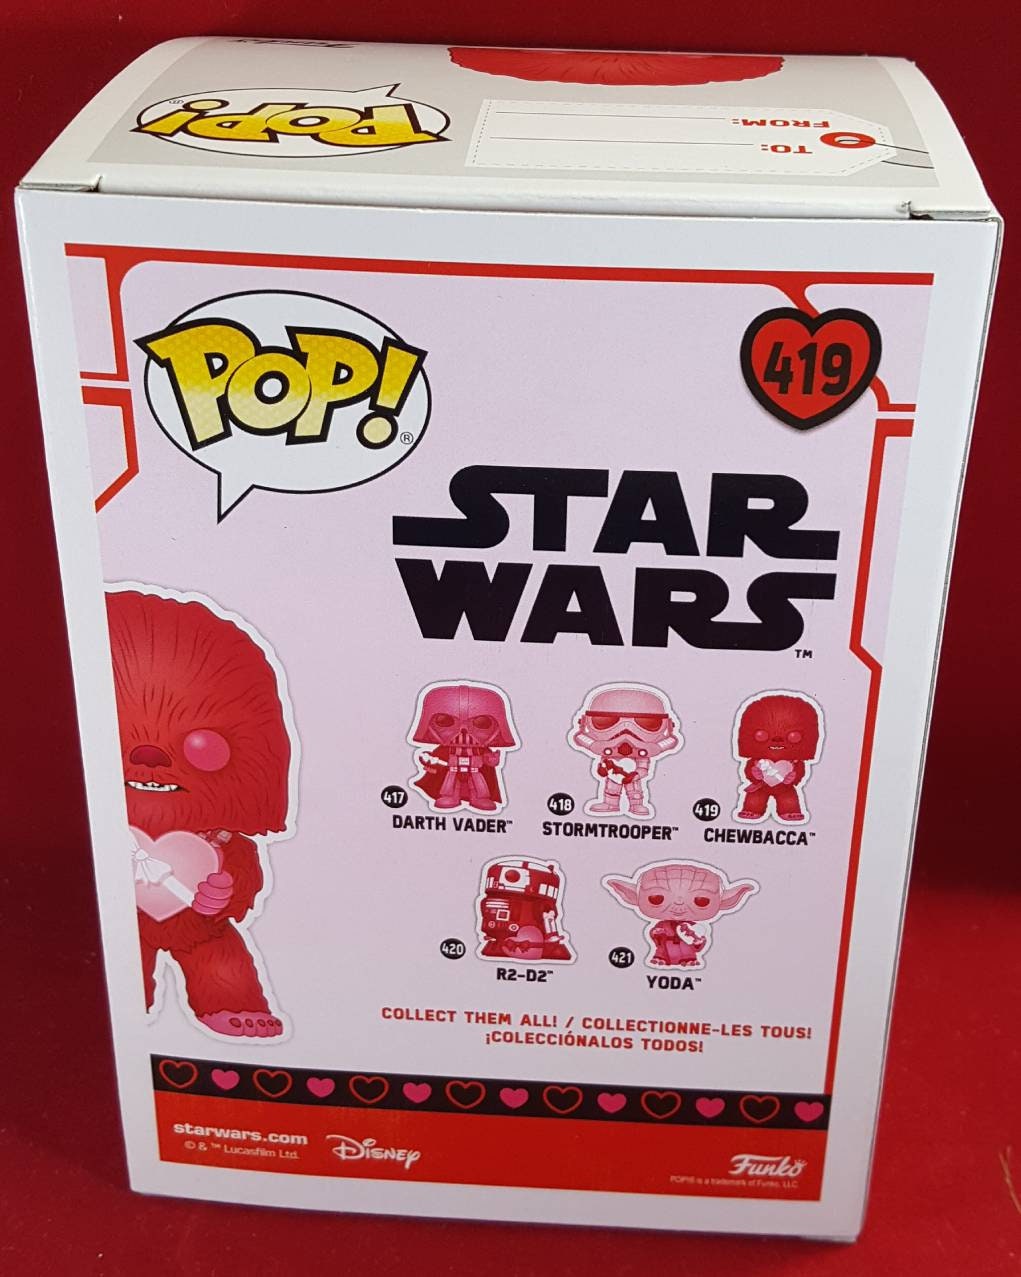 Chewbacca  Valentine's Funko # 419  Star Wars Pop (nib)